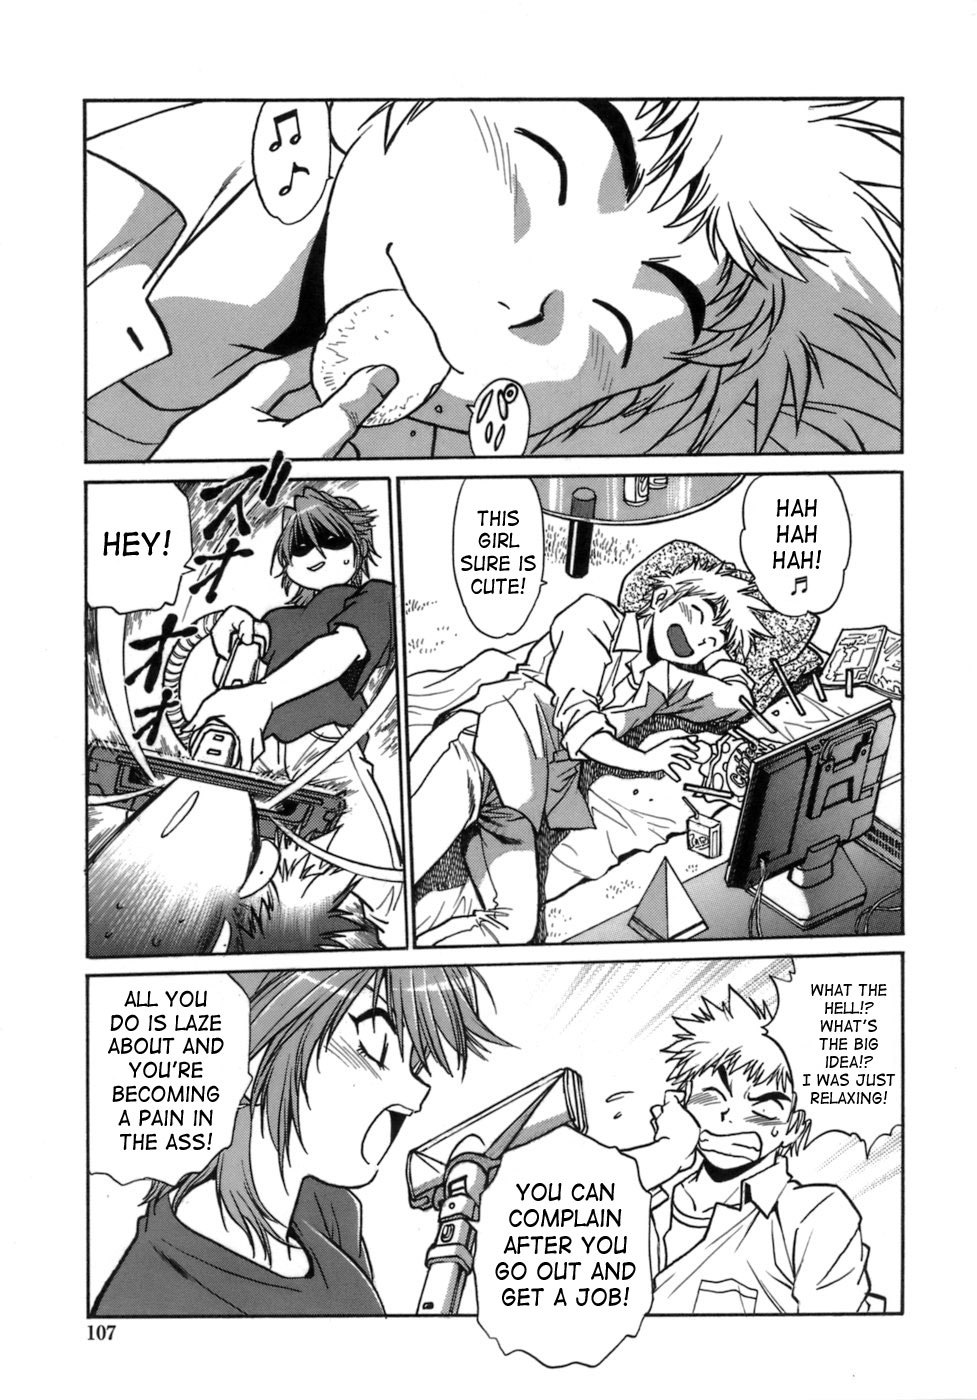 Tail Chaser Vol.1 104 hentai manga